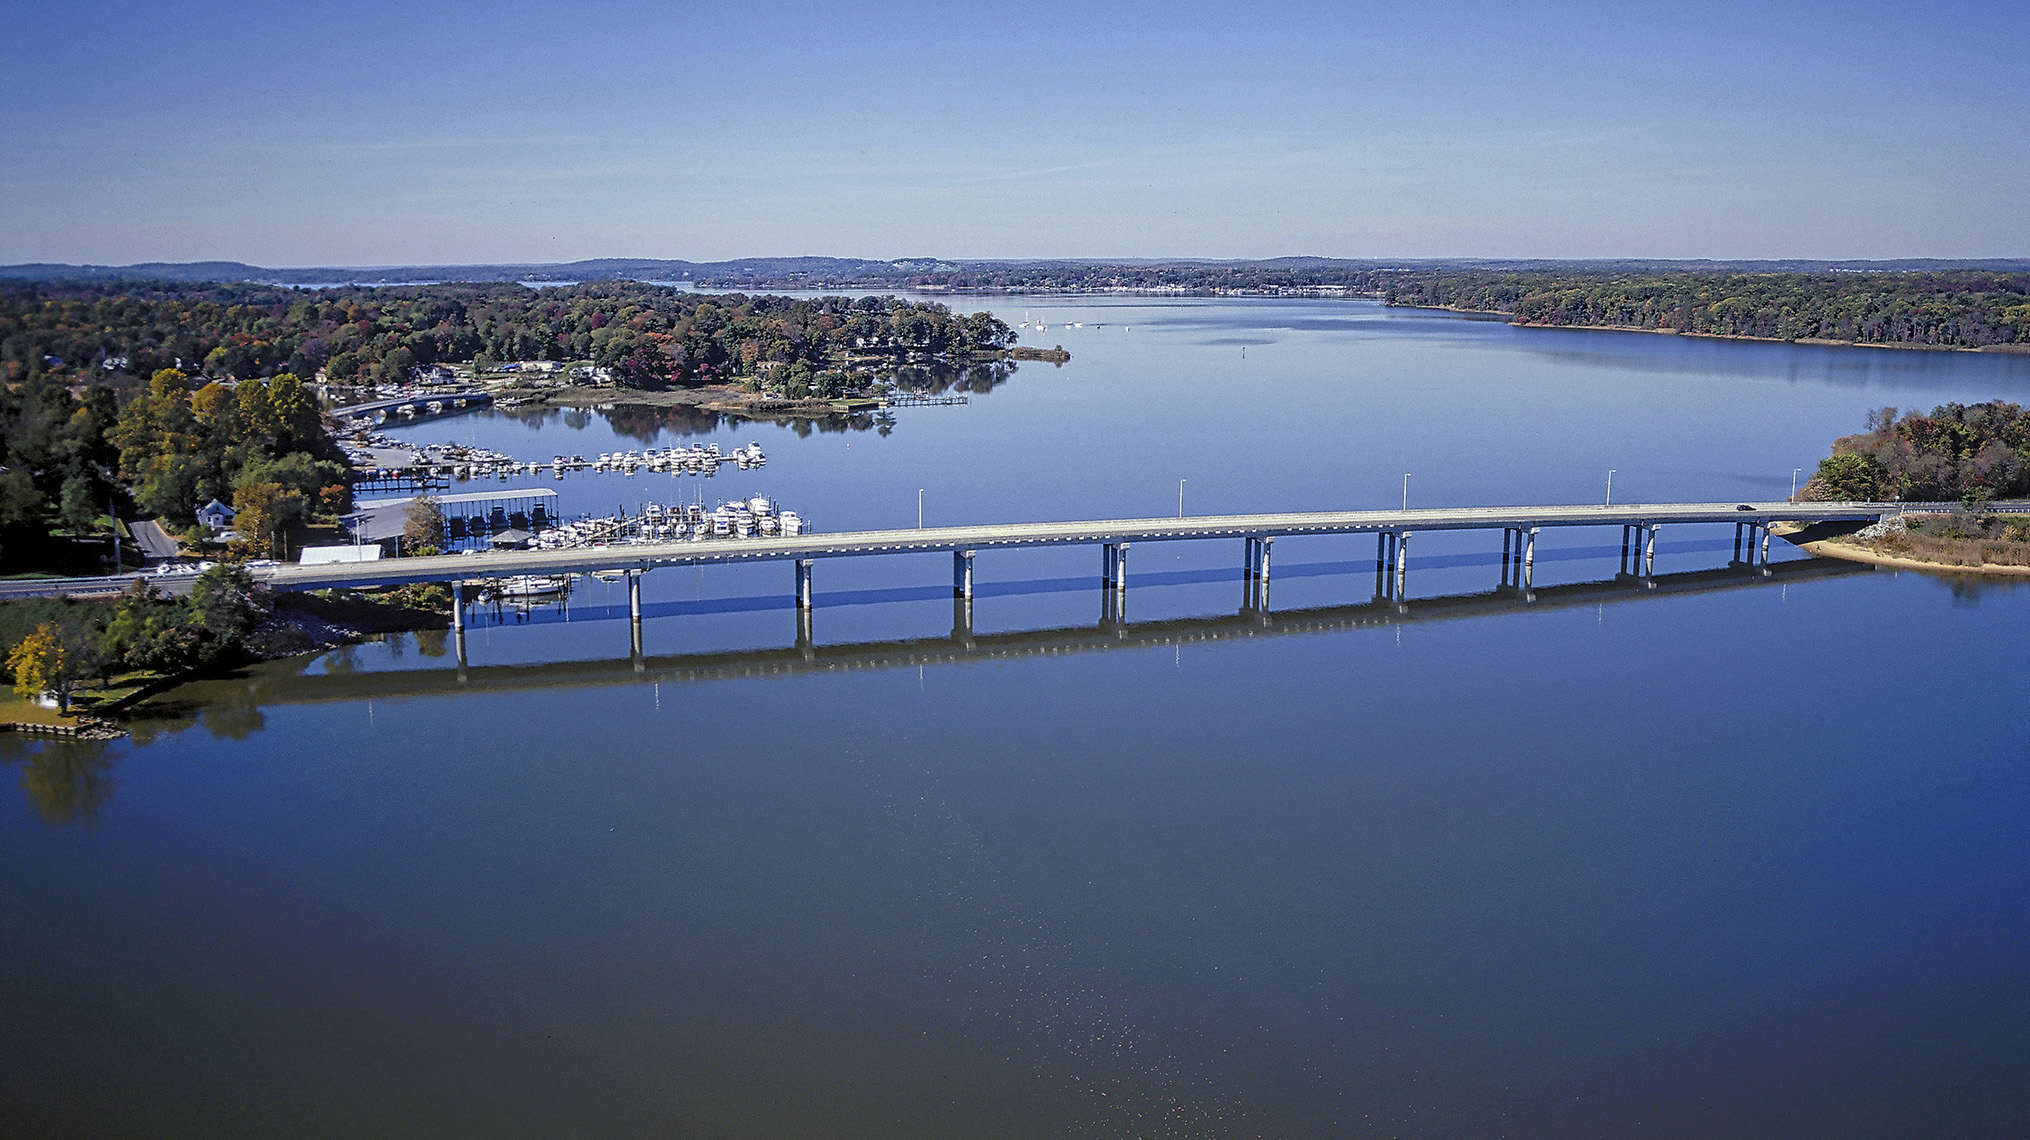 Aerial photograph of bridge